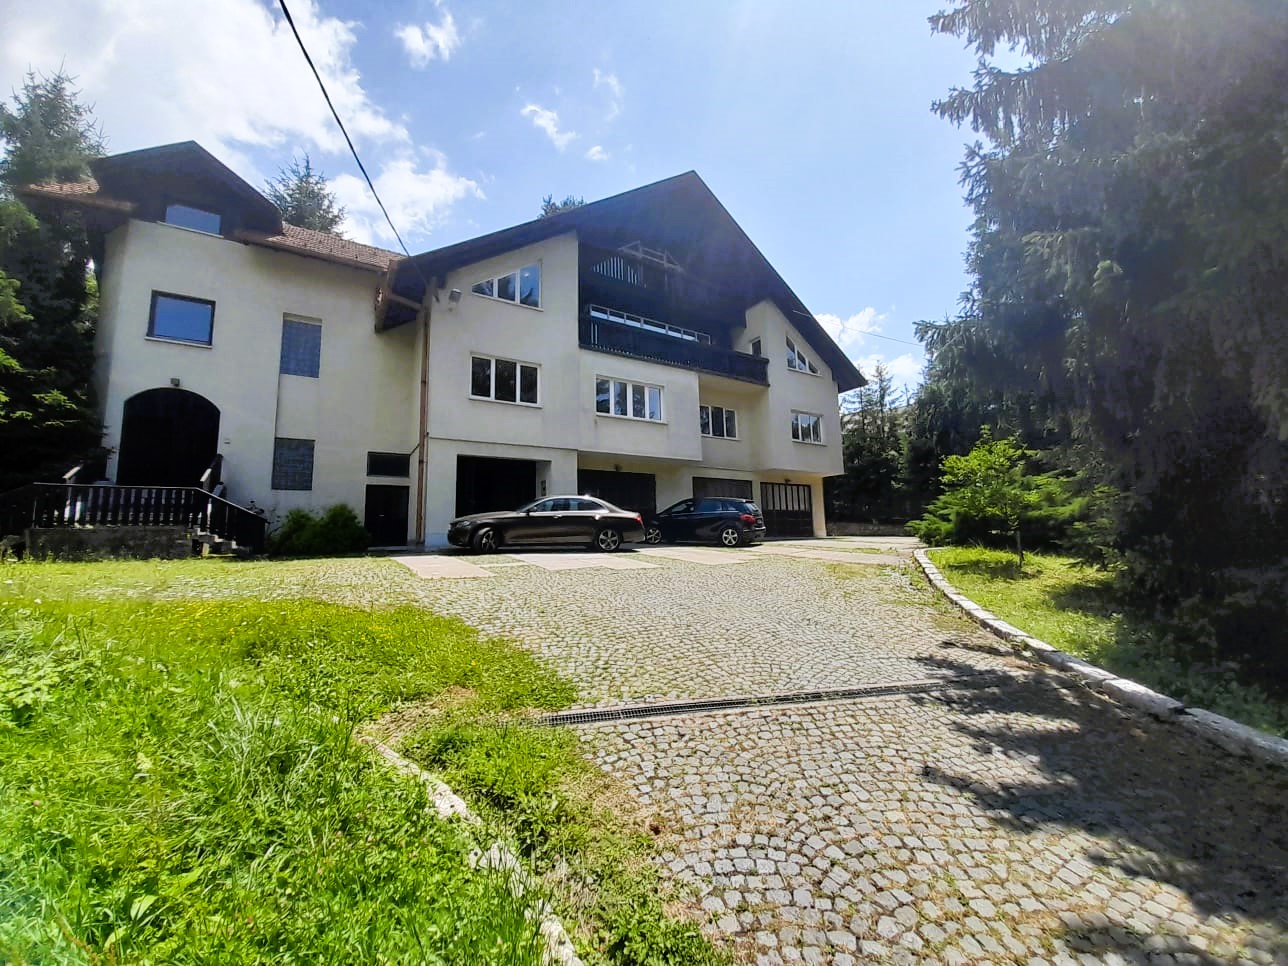 PLATINUM STAR AGENCIJA za nekretnine izdvaja iz svoje ponude prodaju stambeno poslovne nekretnine 850m2 sa 2485m2 okućnice -smještenoj u zelenoj oazi nadomak Sarajeva, Opština Vogošća -Hotonj